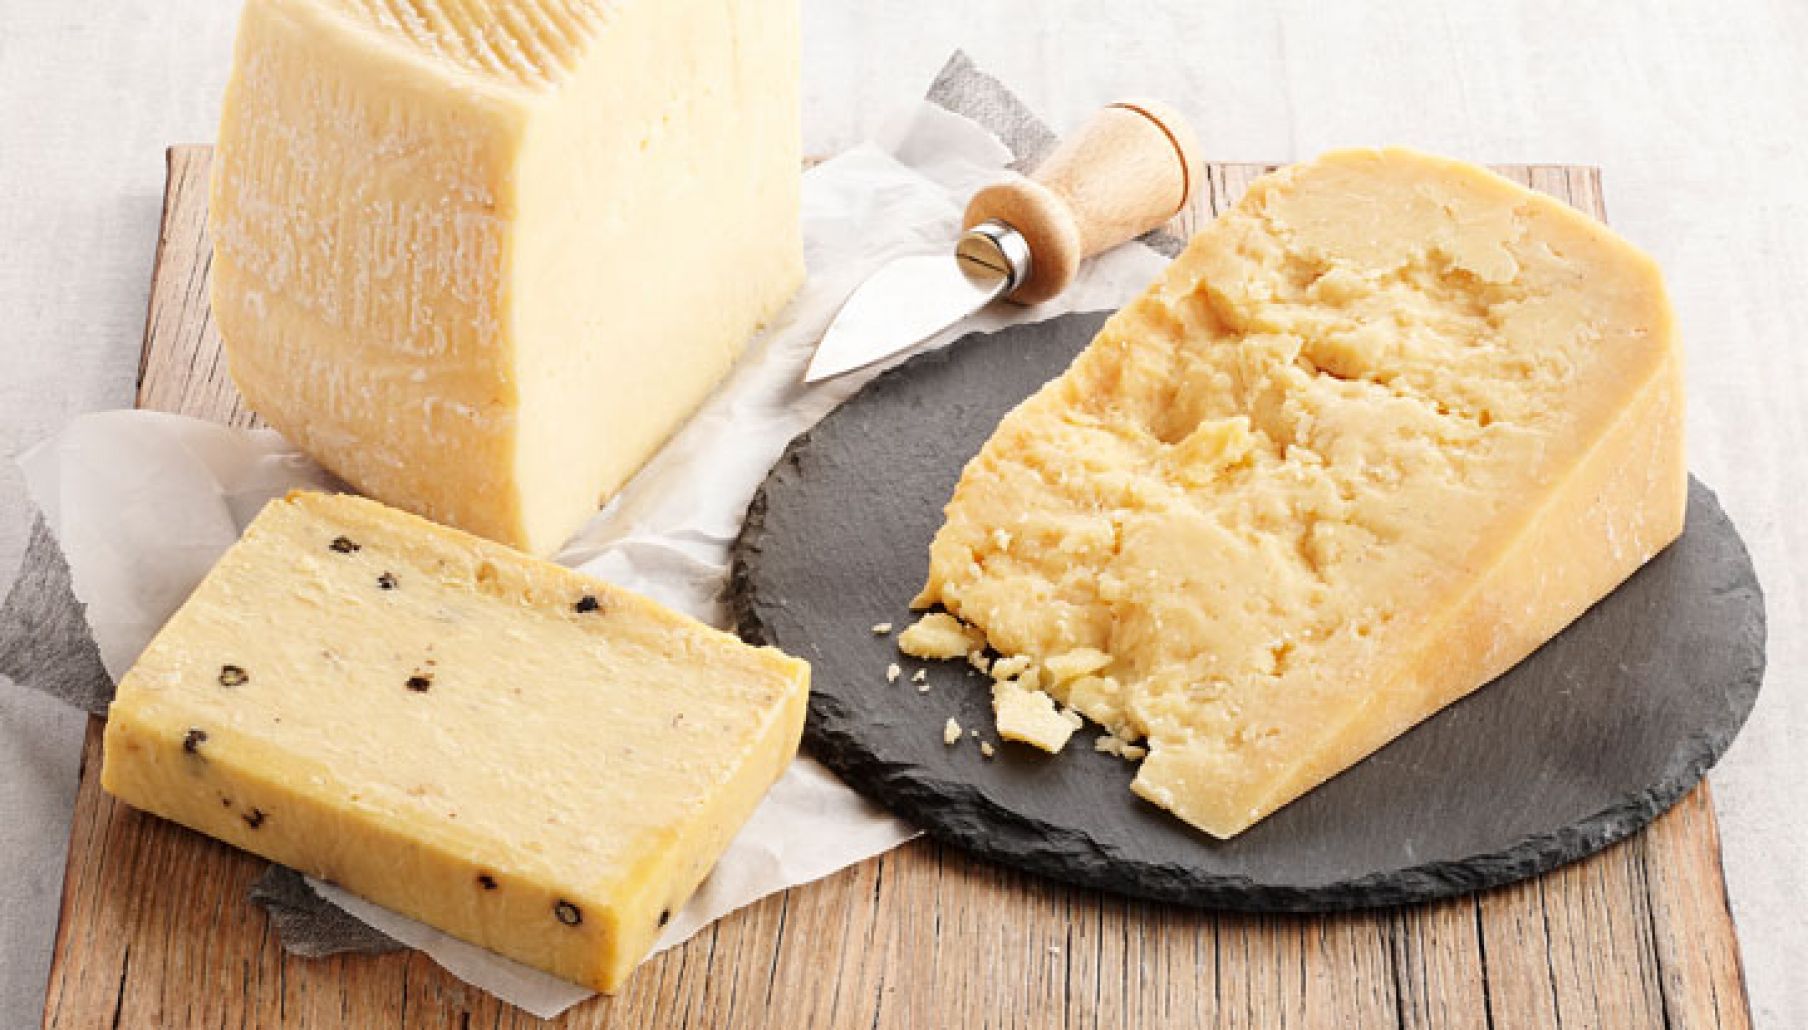 أسرار عمل الجبنة الرومي في البيت بنفس الطعم الأصلي جربيها بنفسك مش هتشريها من برة تانى